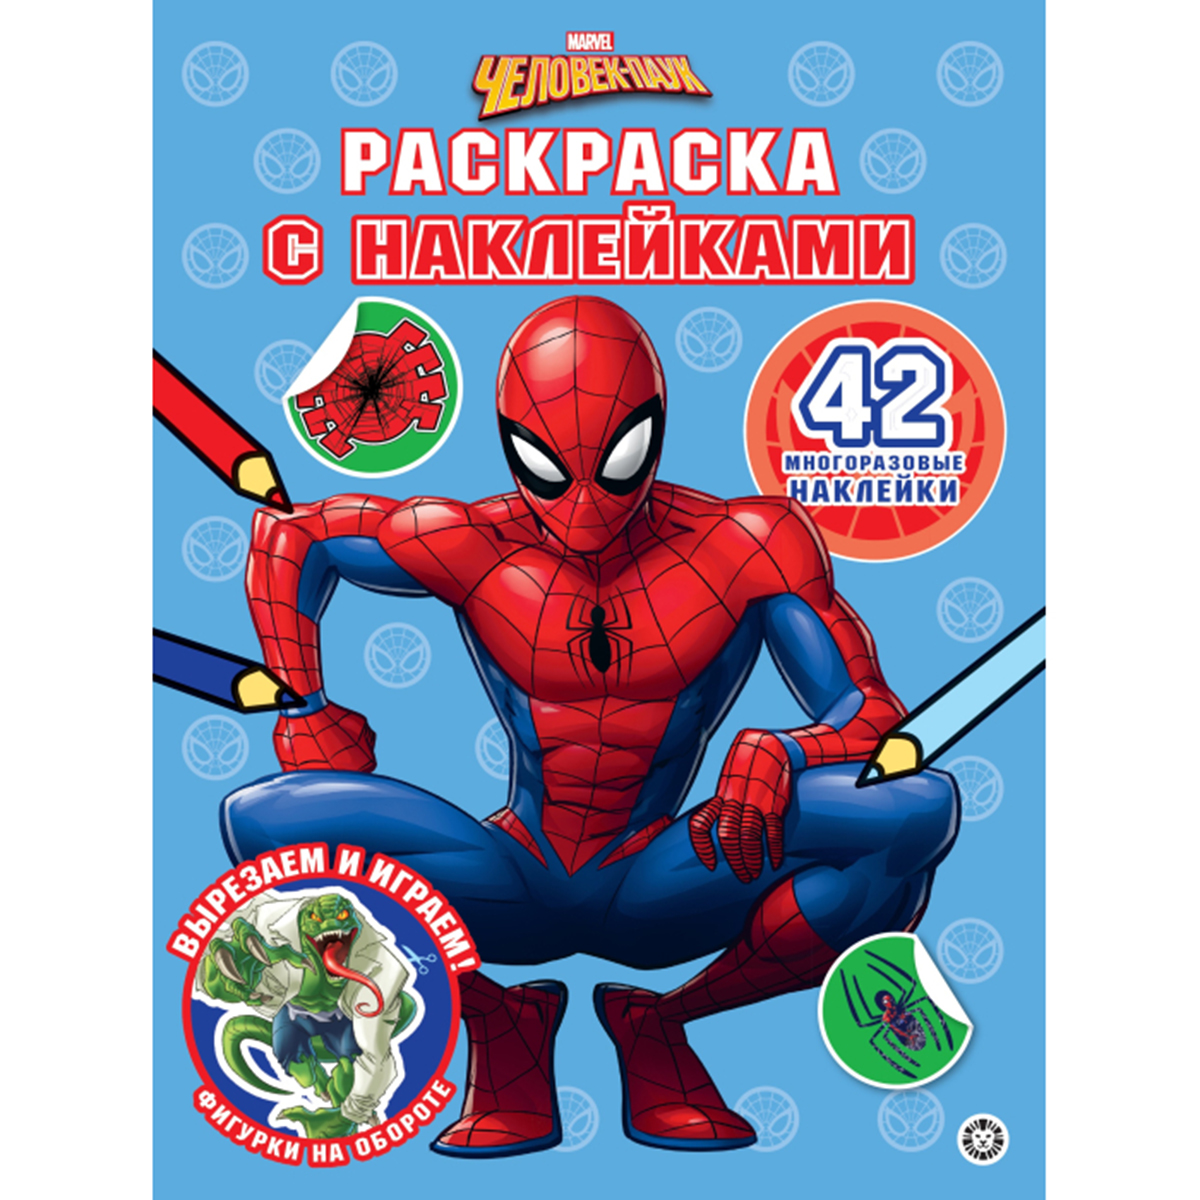 Очень большая раскраска с наклейками Человек паук Мстители